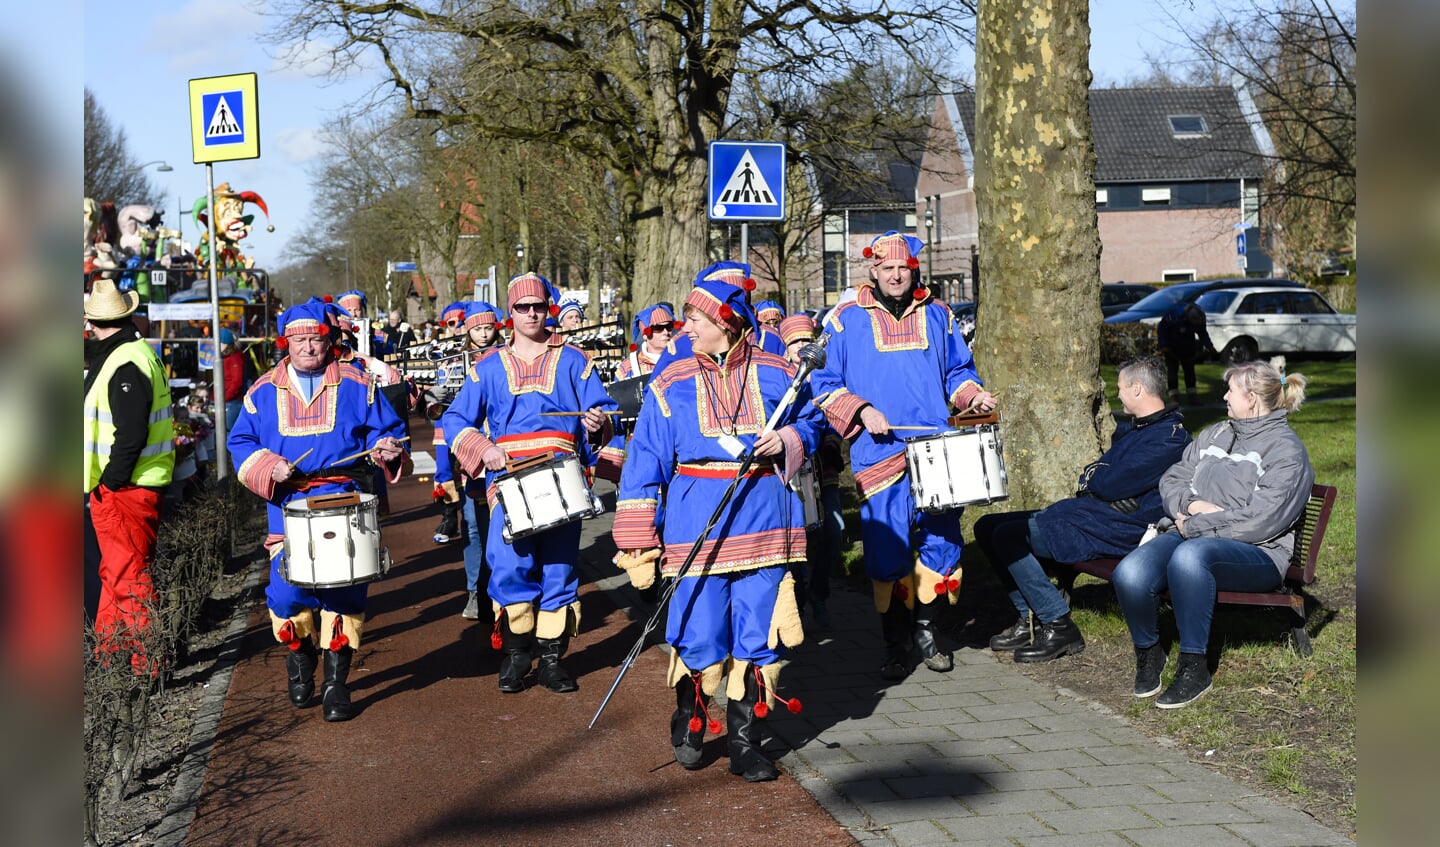 Bosschenhoofd - 10-02-2018 - Foto: peter Braakmann - Carnavals optocht in Bosschenhoofd was een groot succes.